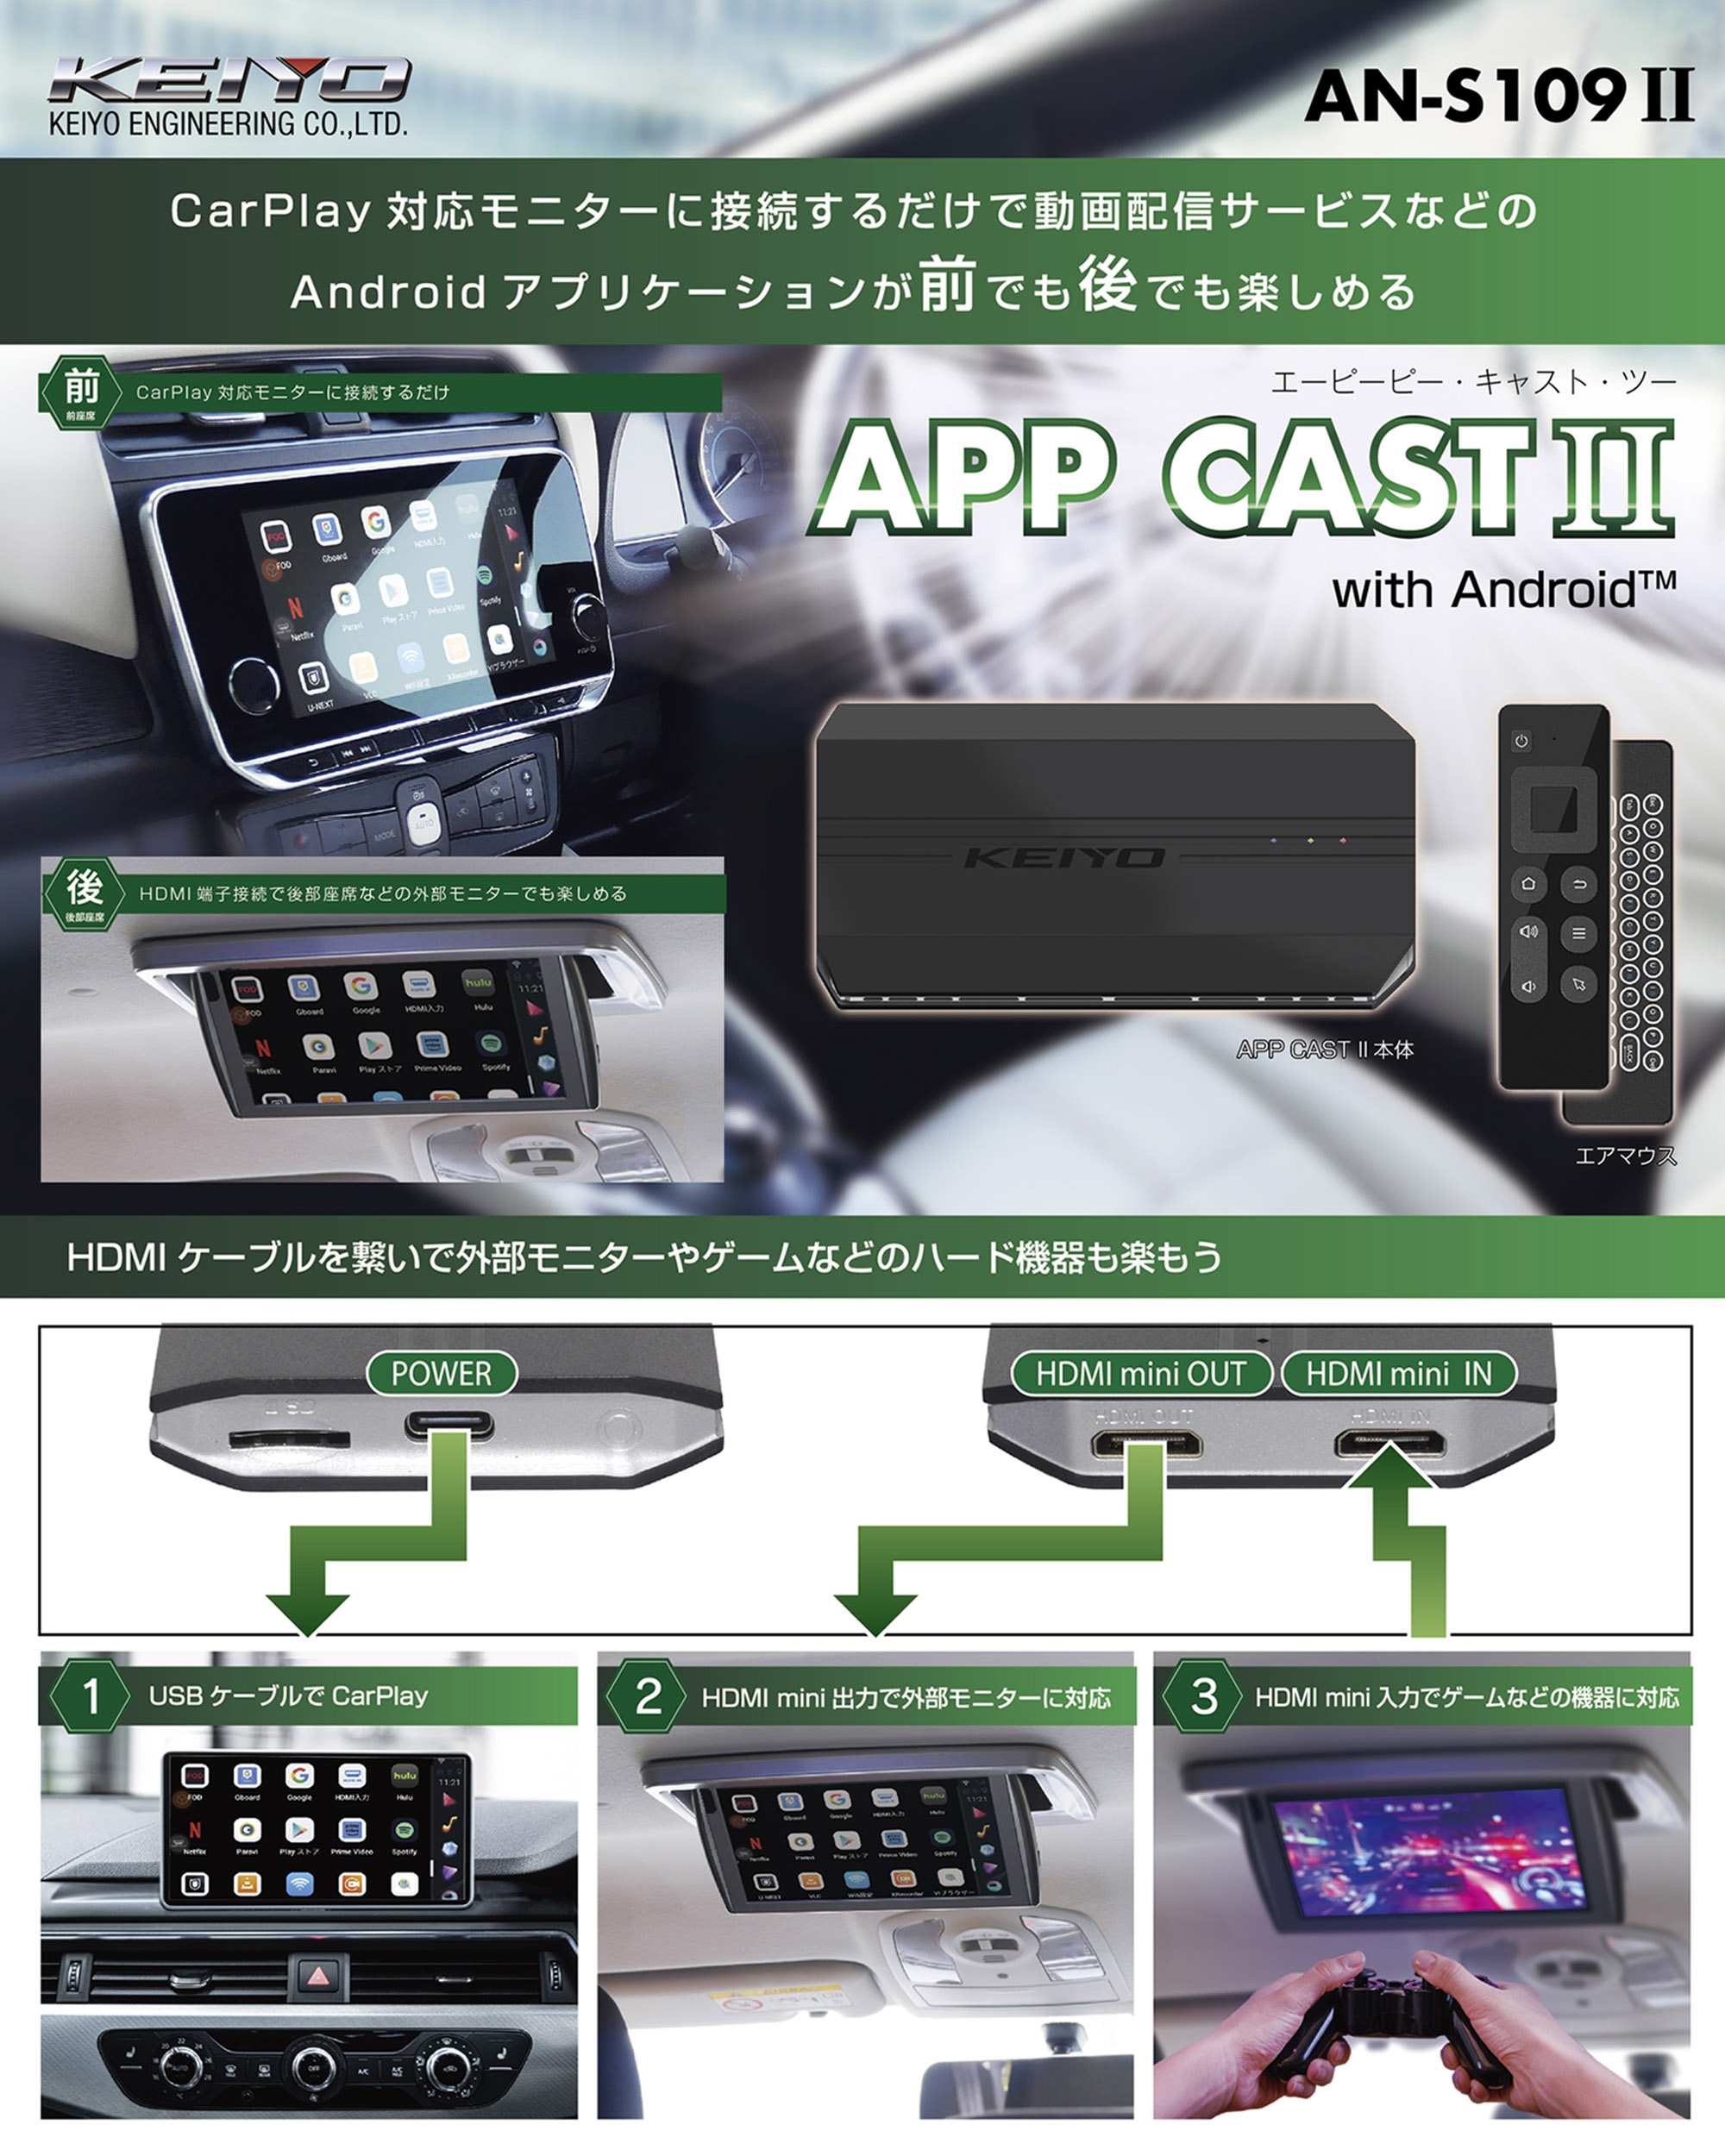 APPCAST II KEIYO APPCAST Android12搭載!カーナビでAndroidアプリが利用できるコンパクト設計  ケイヨウエンジニアリング AN-S109-2